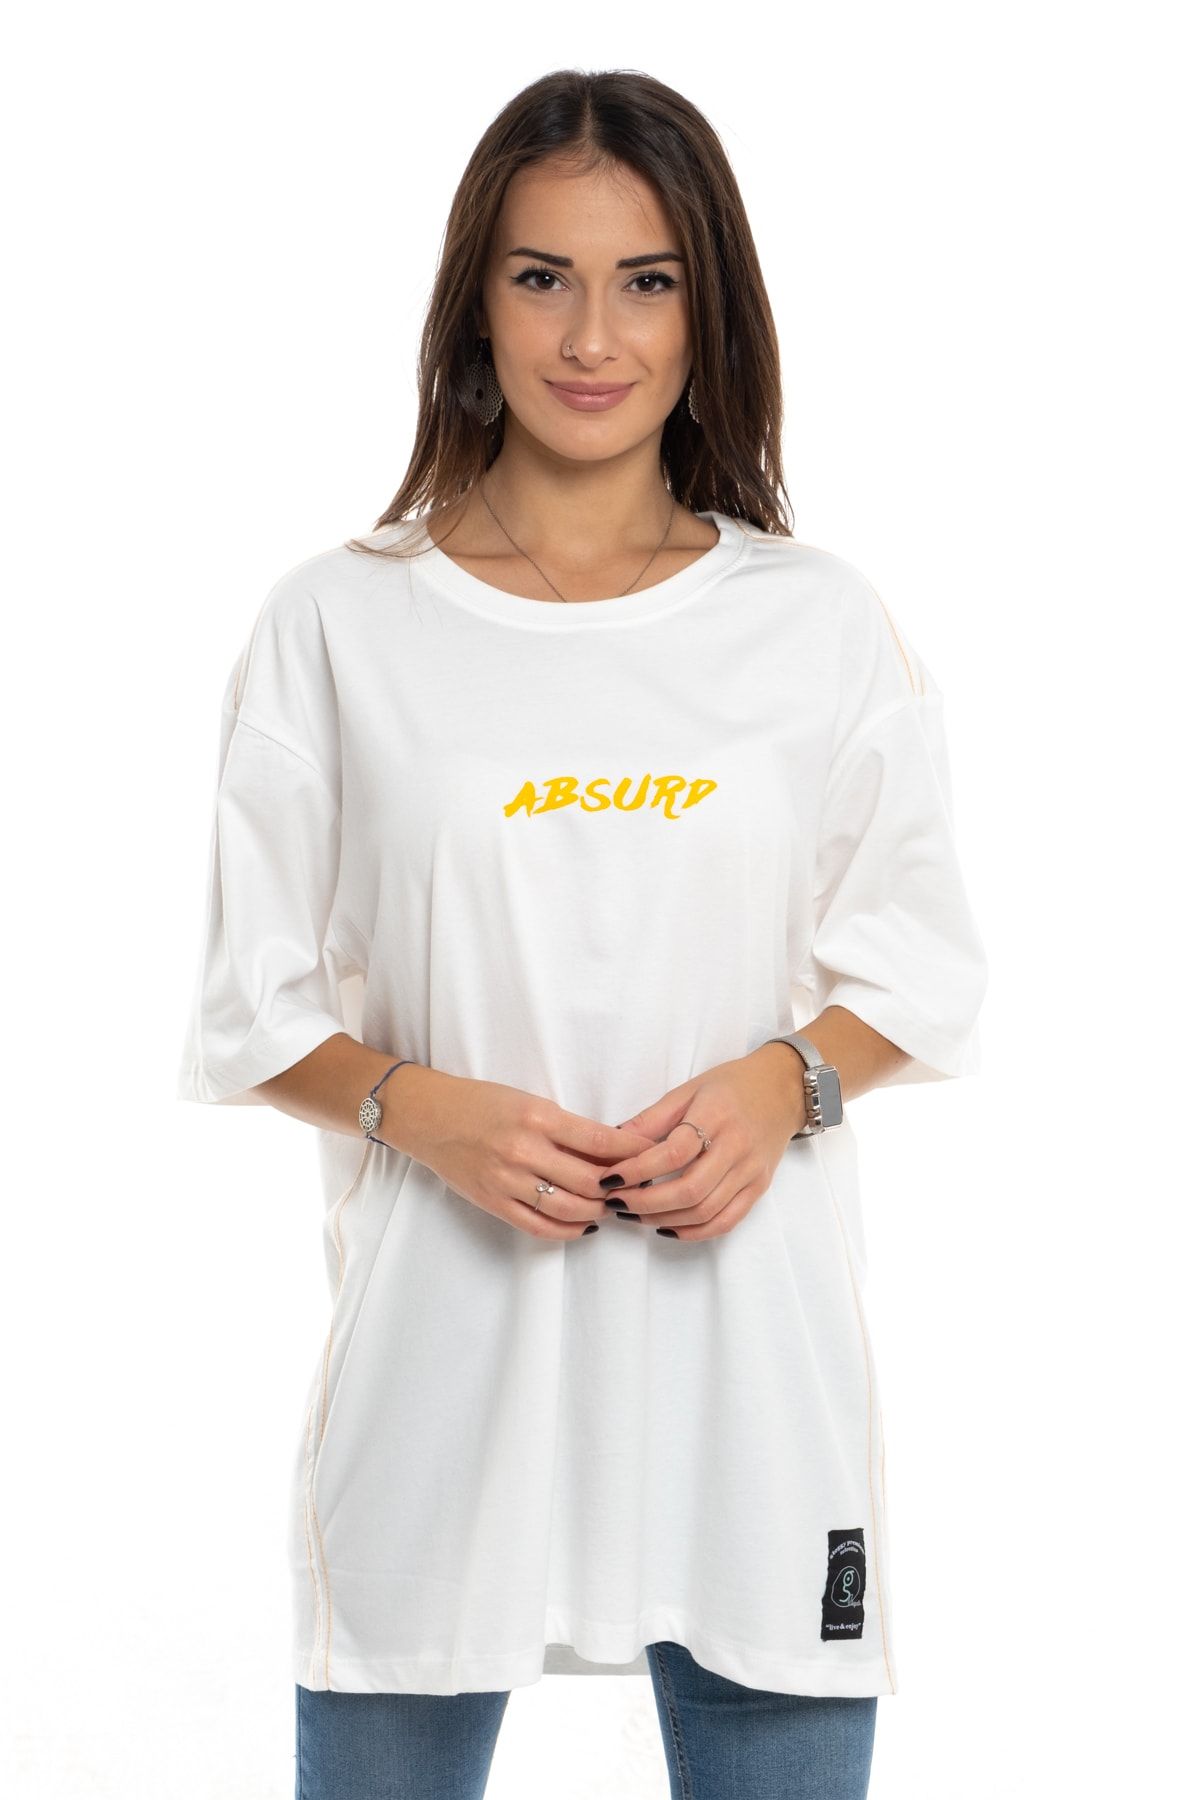 GLOGGY Unisex Bol Kesim Baskılı T-shirt Glg-mfl-001